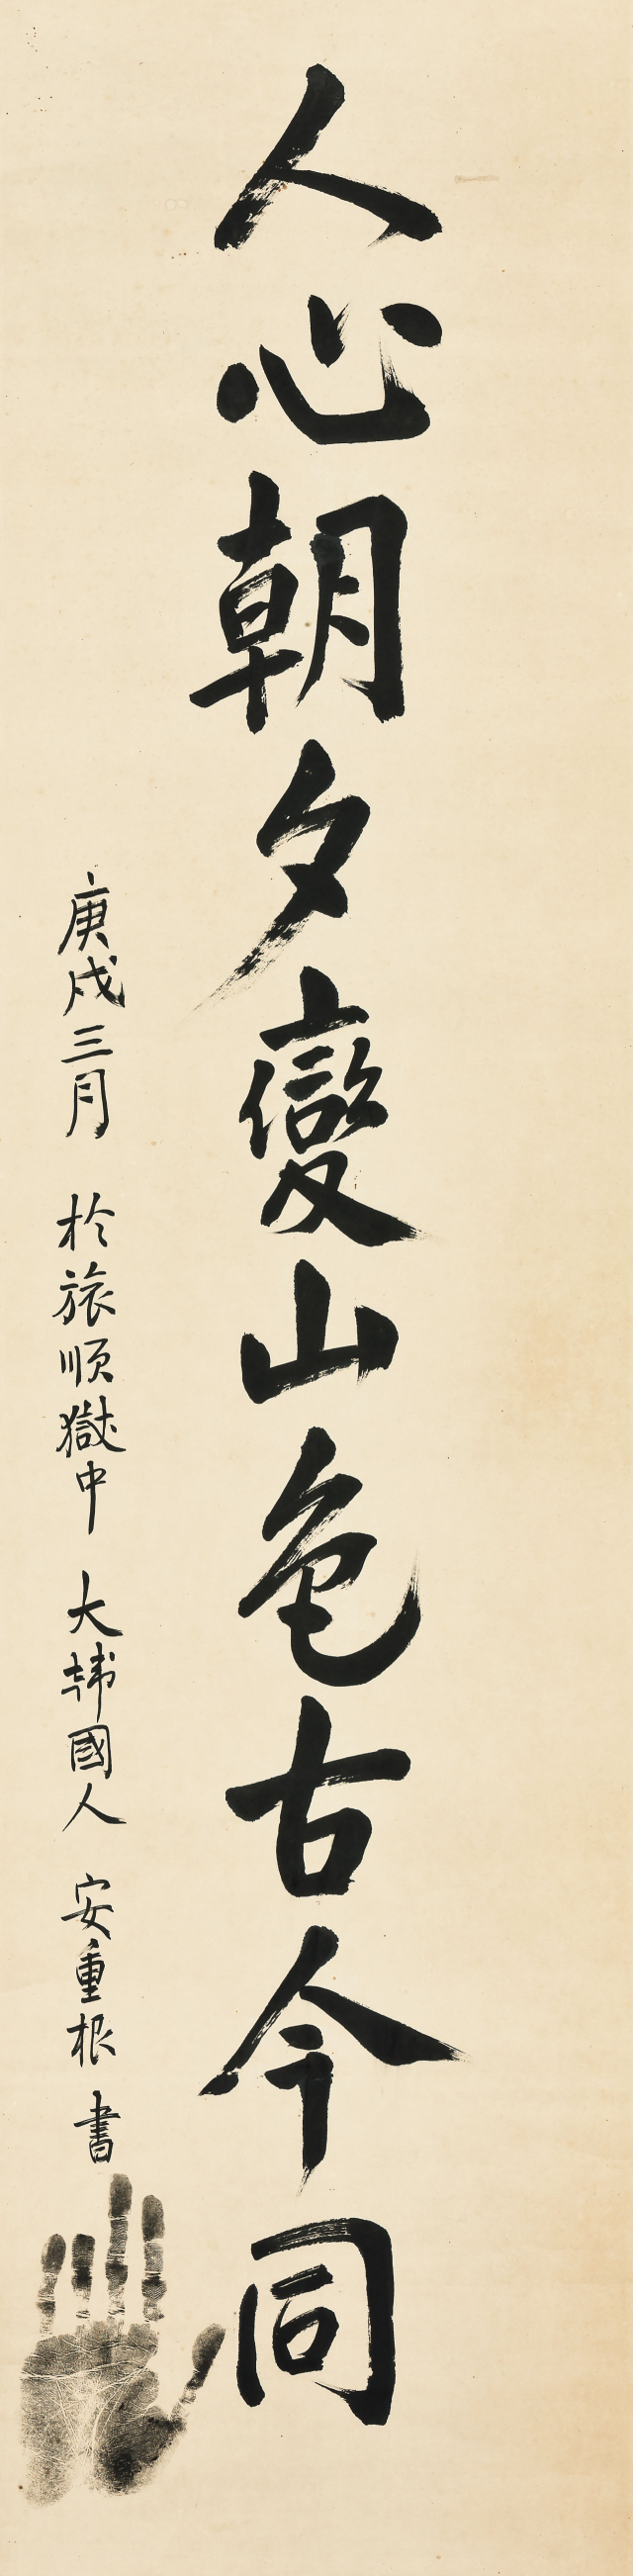 안중근, 1879-1910, 인심조석변산색고금동, ink on paper, 33.8×137.2cm. 서울옥션 제공